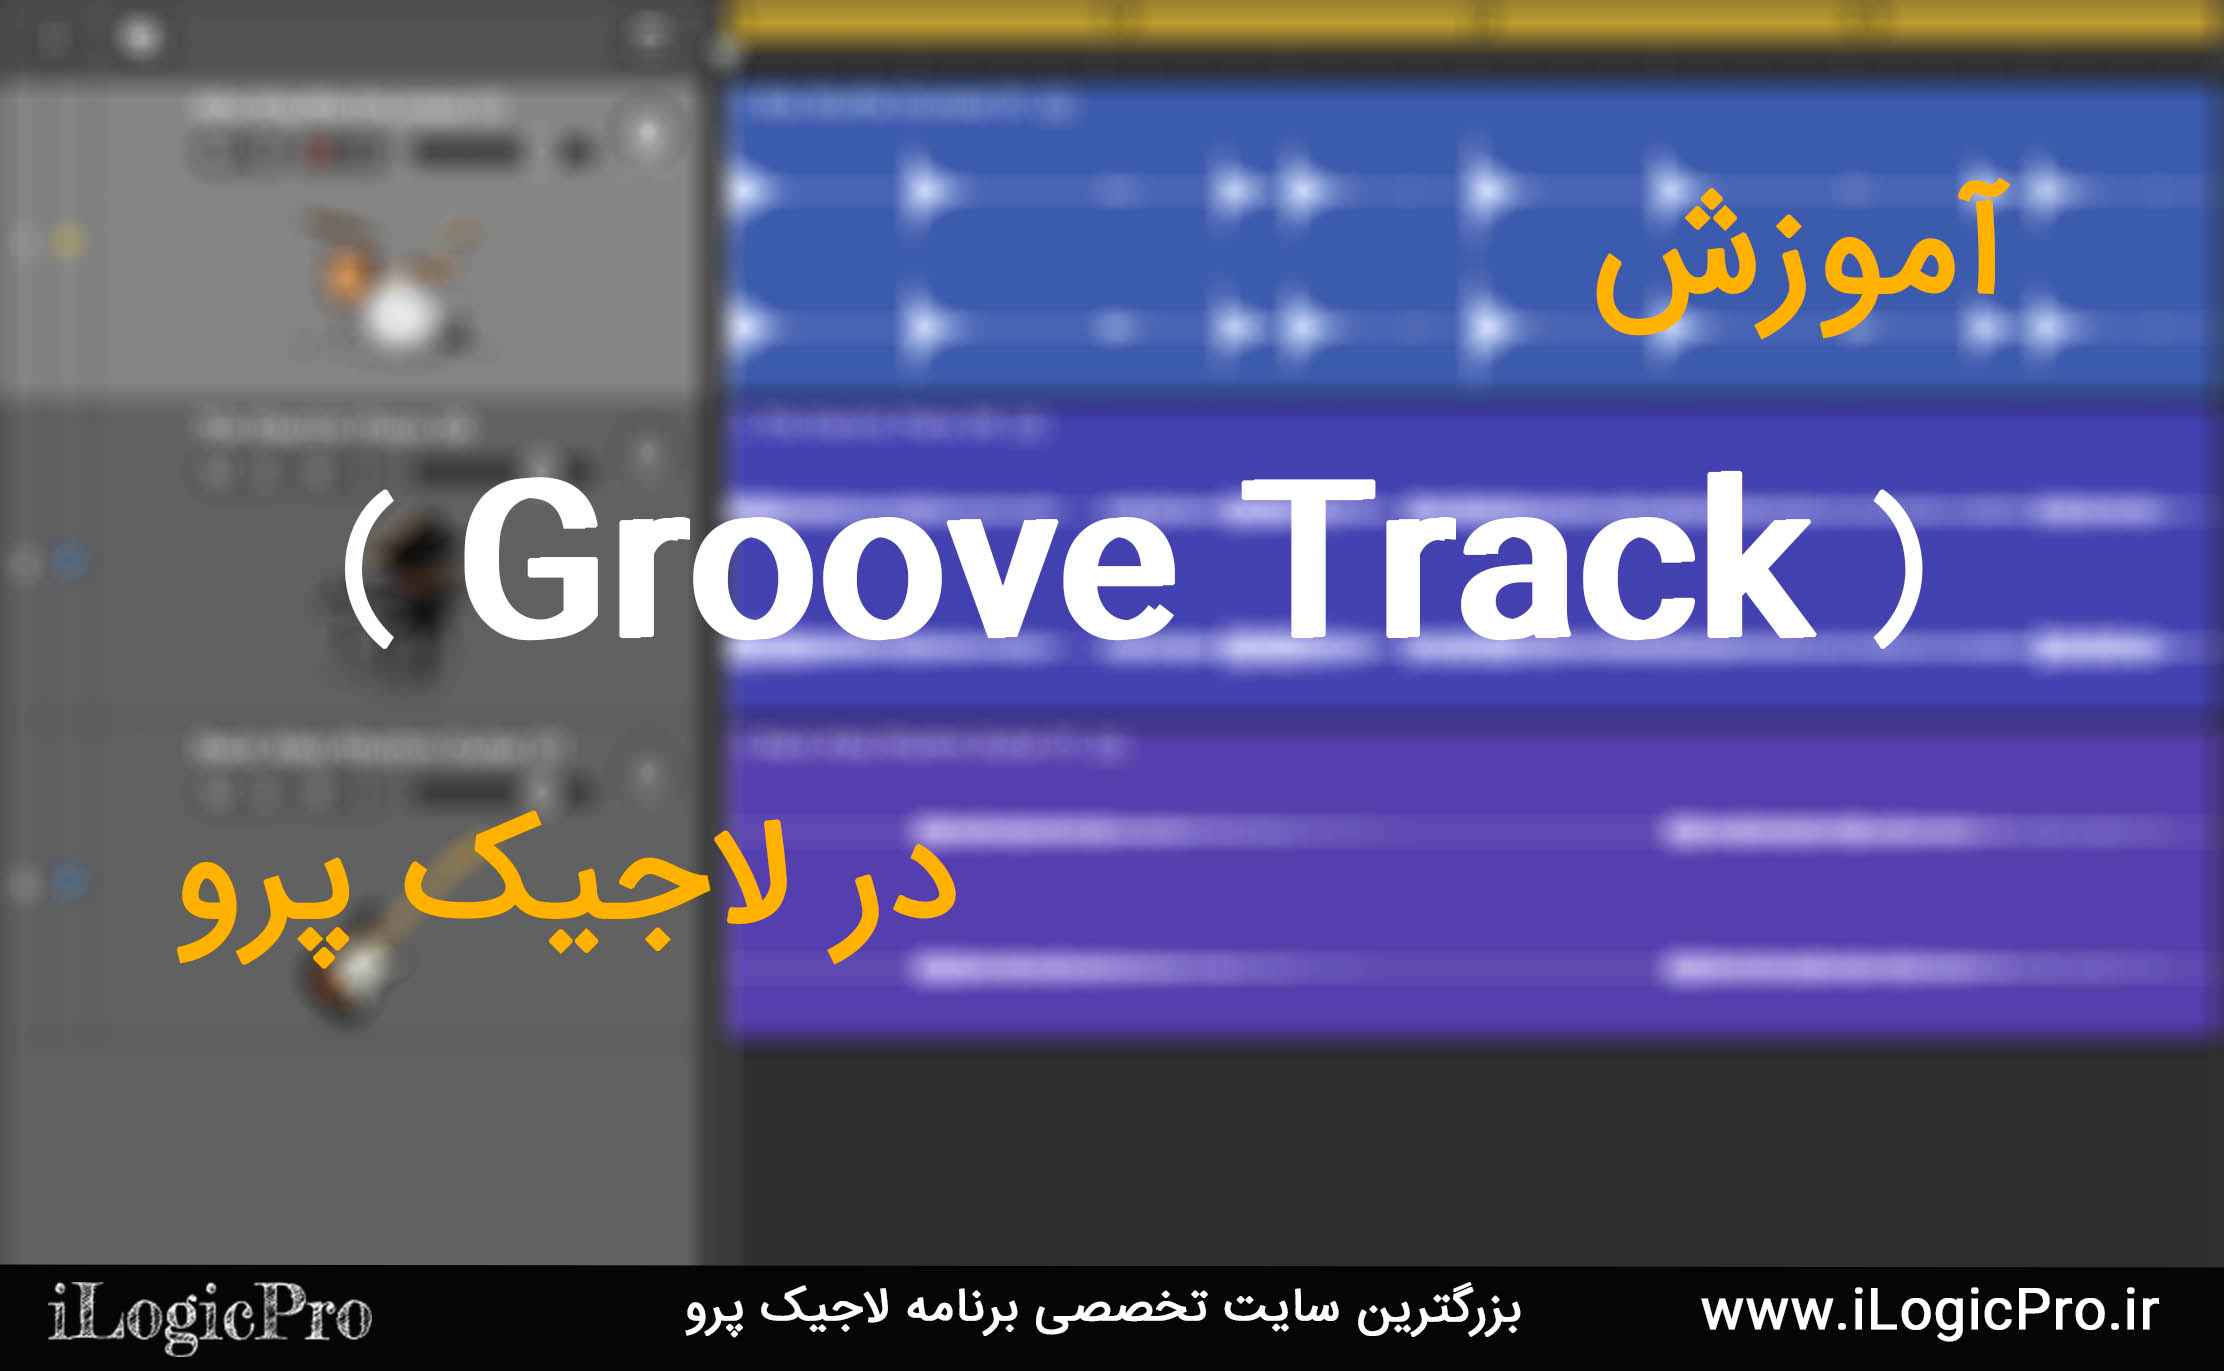 Groove Track در لاجیک پرو Groove Track در لاجیک پرو شاید در نگاه اول یک ابزار ساده باشد اما همین ابزار ساده میتواند پروژه شما را از حالت بی نظمی نجات دهد و همچنین میتواند لاین های Midi و Wave شما را کوانتایز کند.